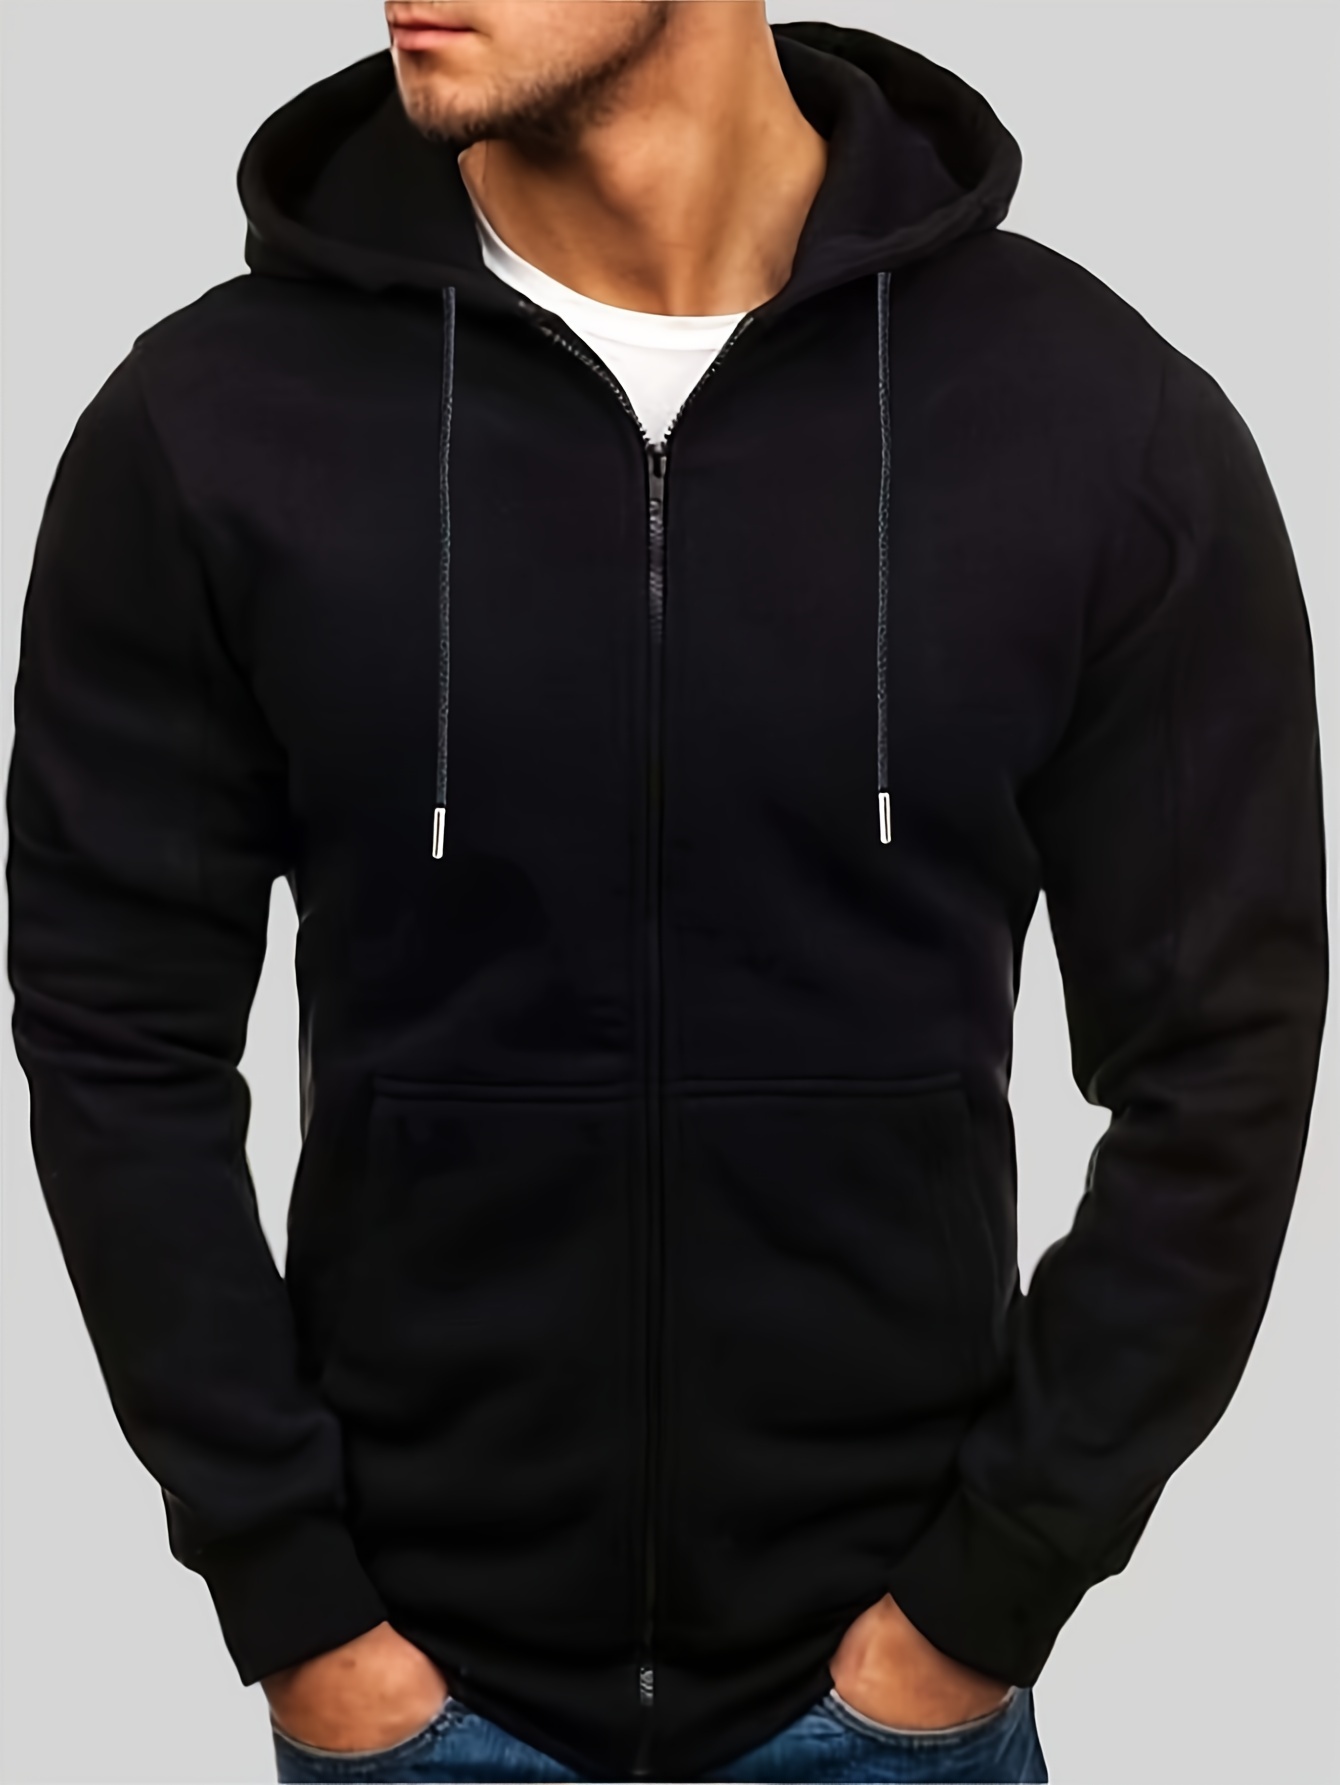 Men's Zip Up Hoodie Jacket Plain Full Zipper Hooded Fleece Sweatshirt  Athletic